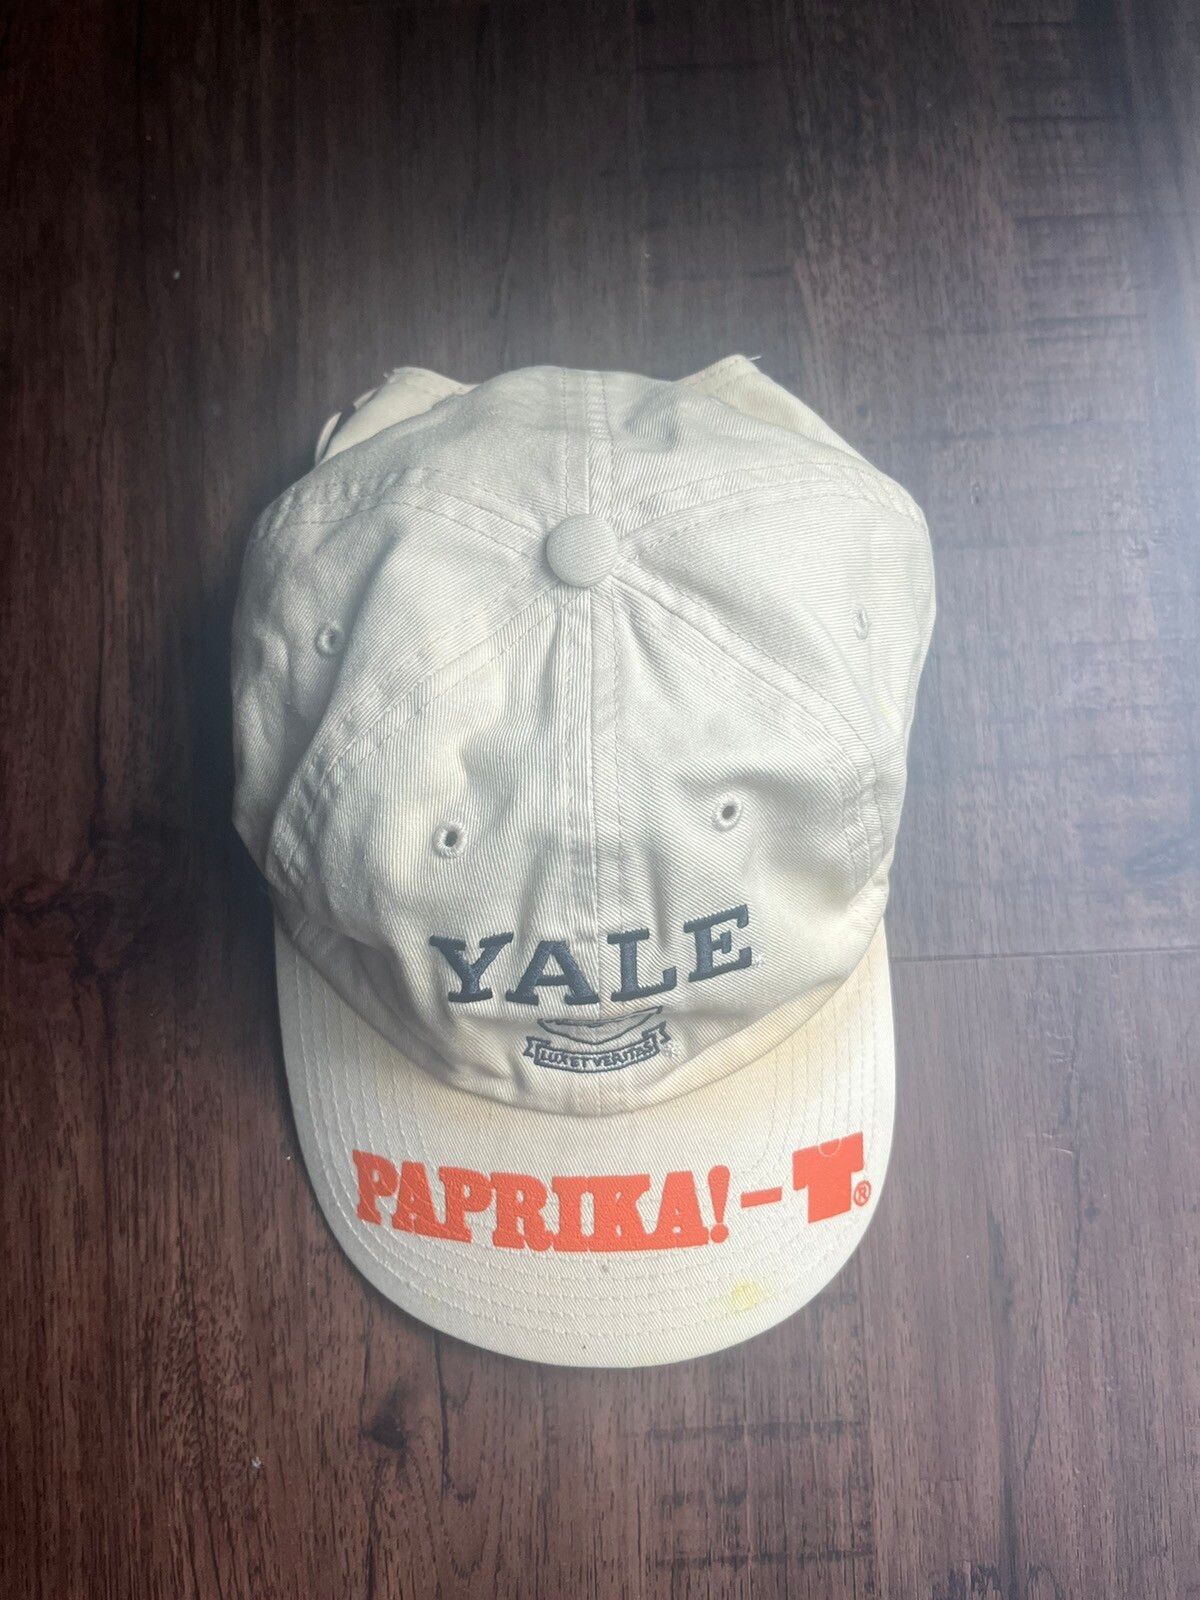 Boot Boyz Biz Boot Boyz Biz Yale Paprika Hat - 1/1 | Grailed